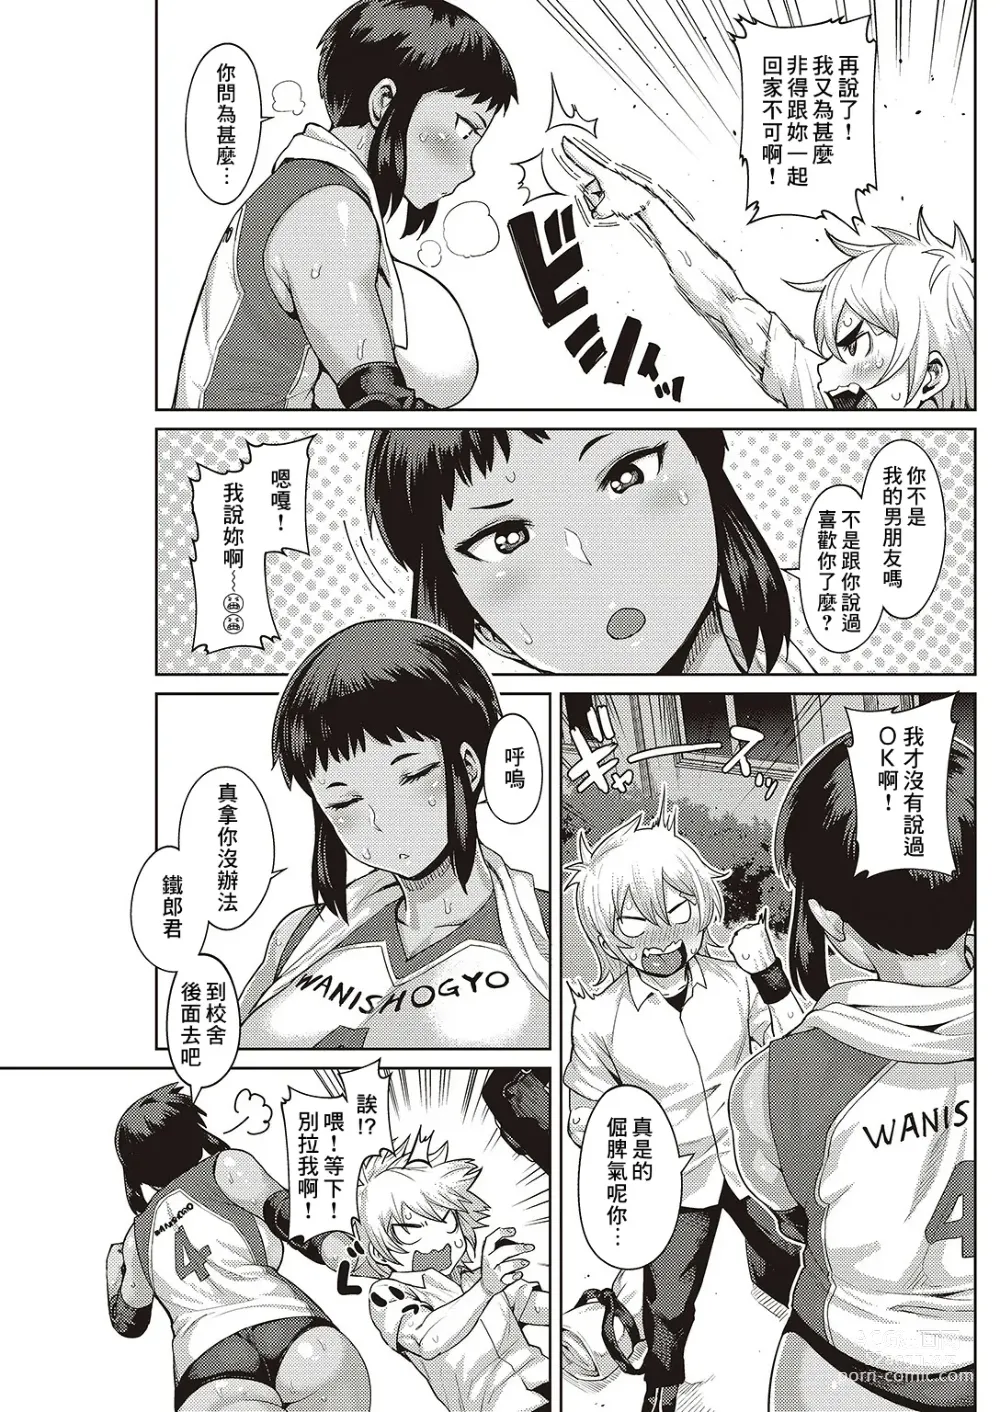 Page 3 of manga Chiisana Kimi dakara…